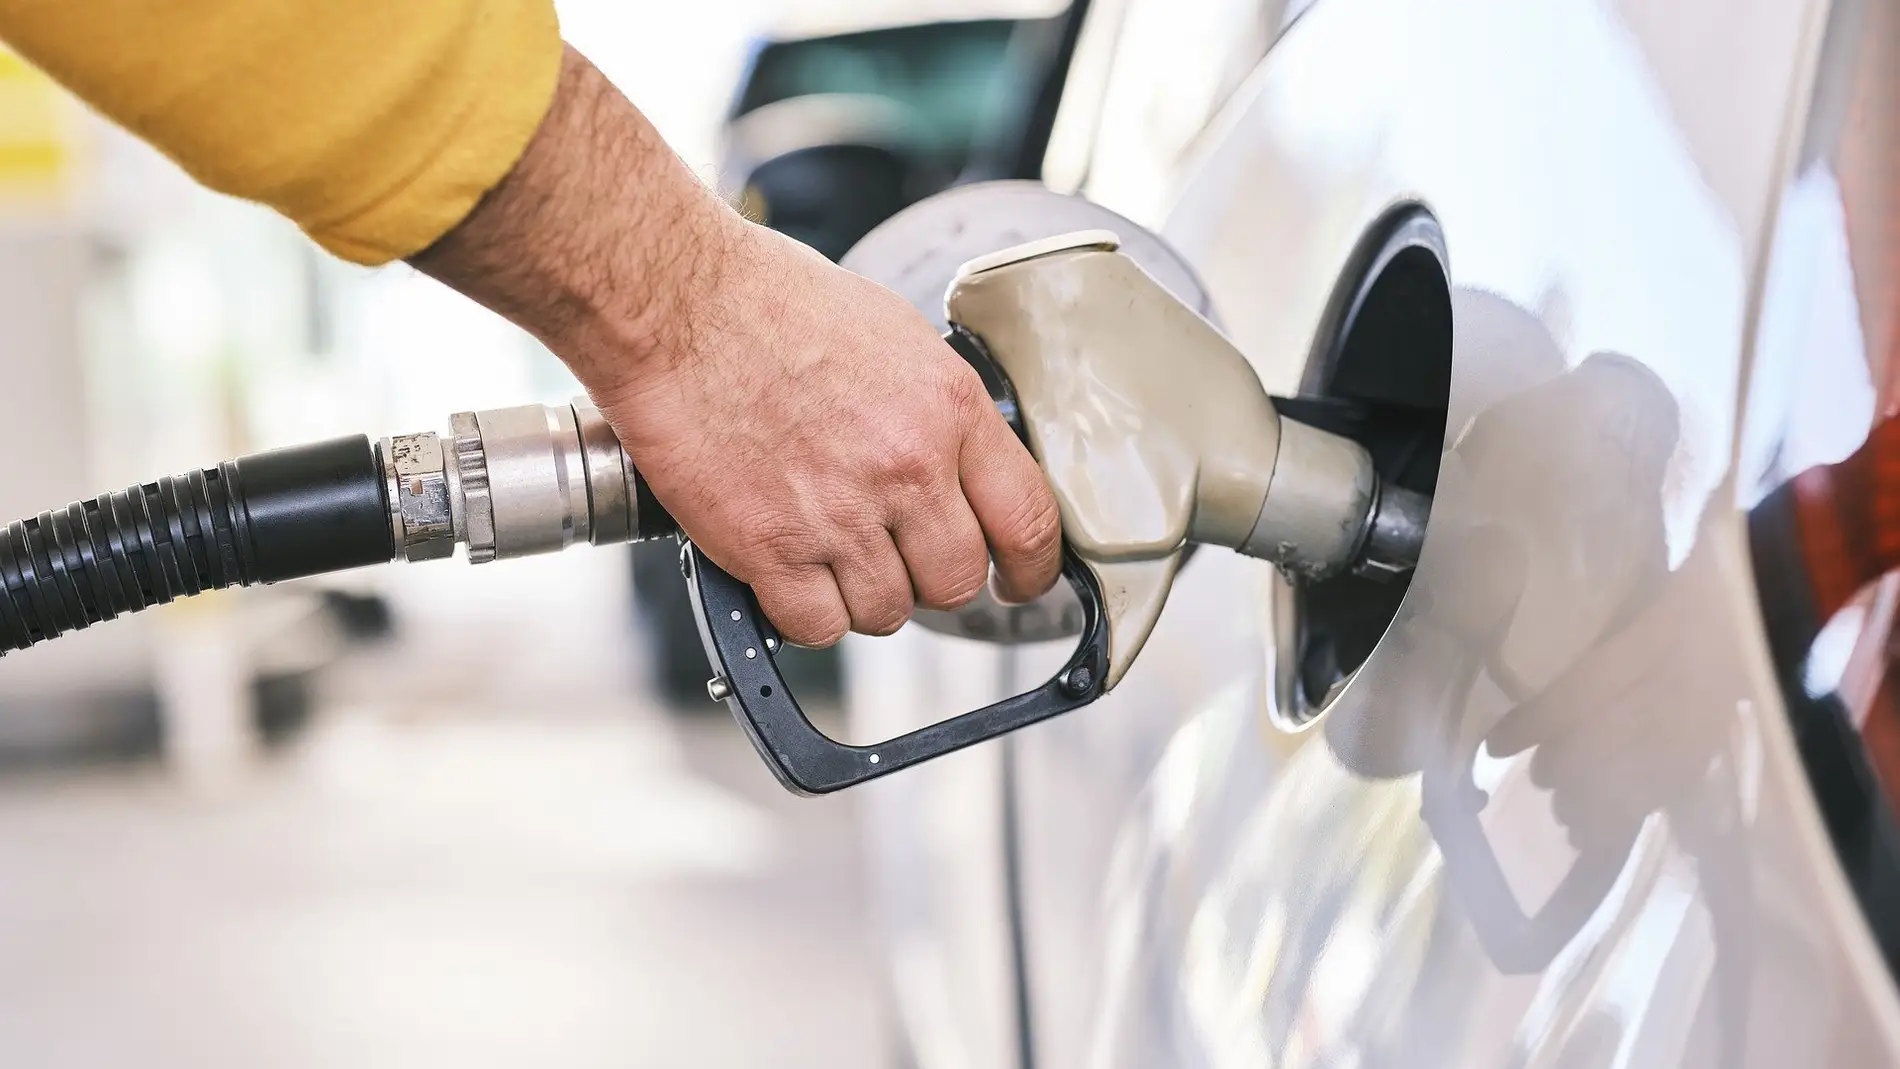 Empleado Labor Comida El precio de la gasolina en Europa: en qué países es más cara y más barata  | Onda Cero Radio